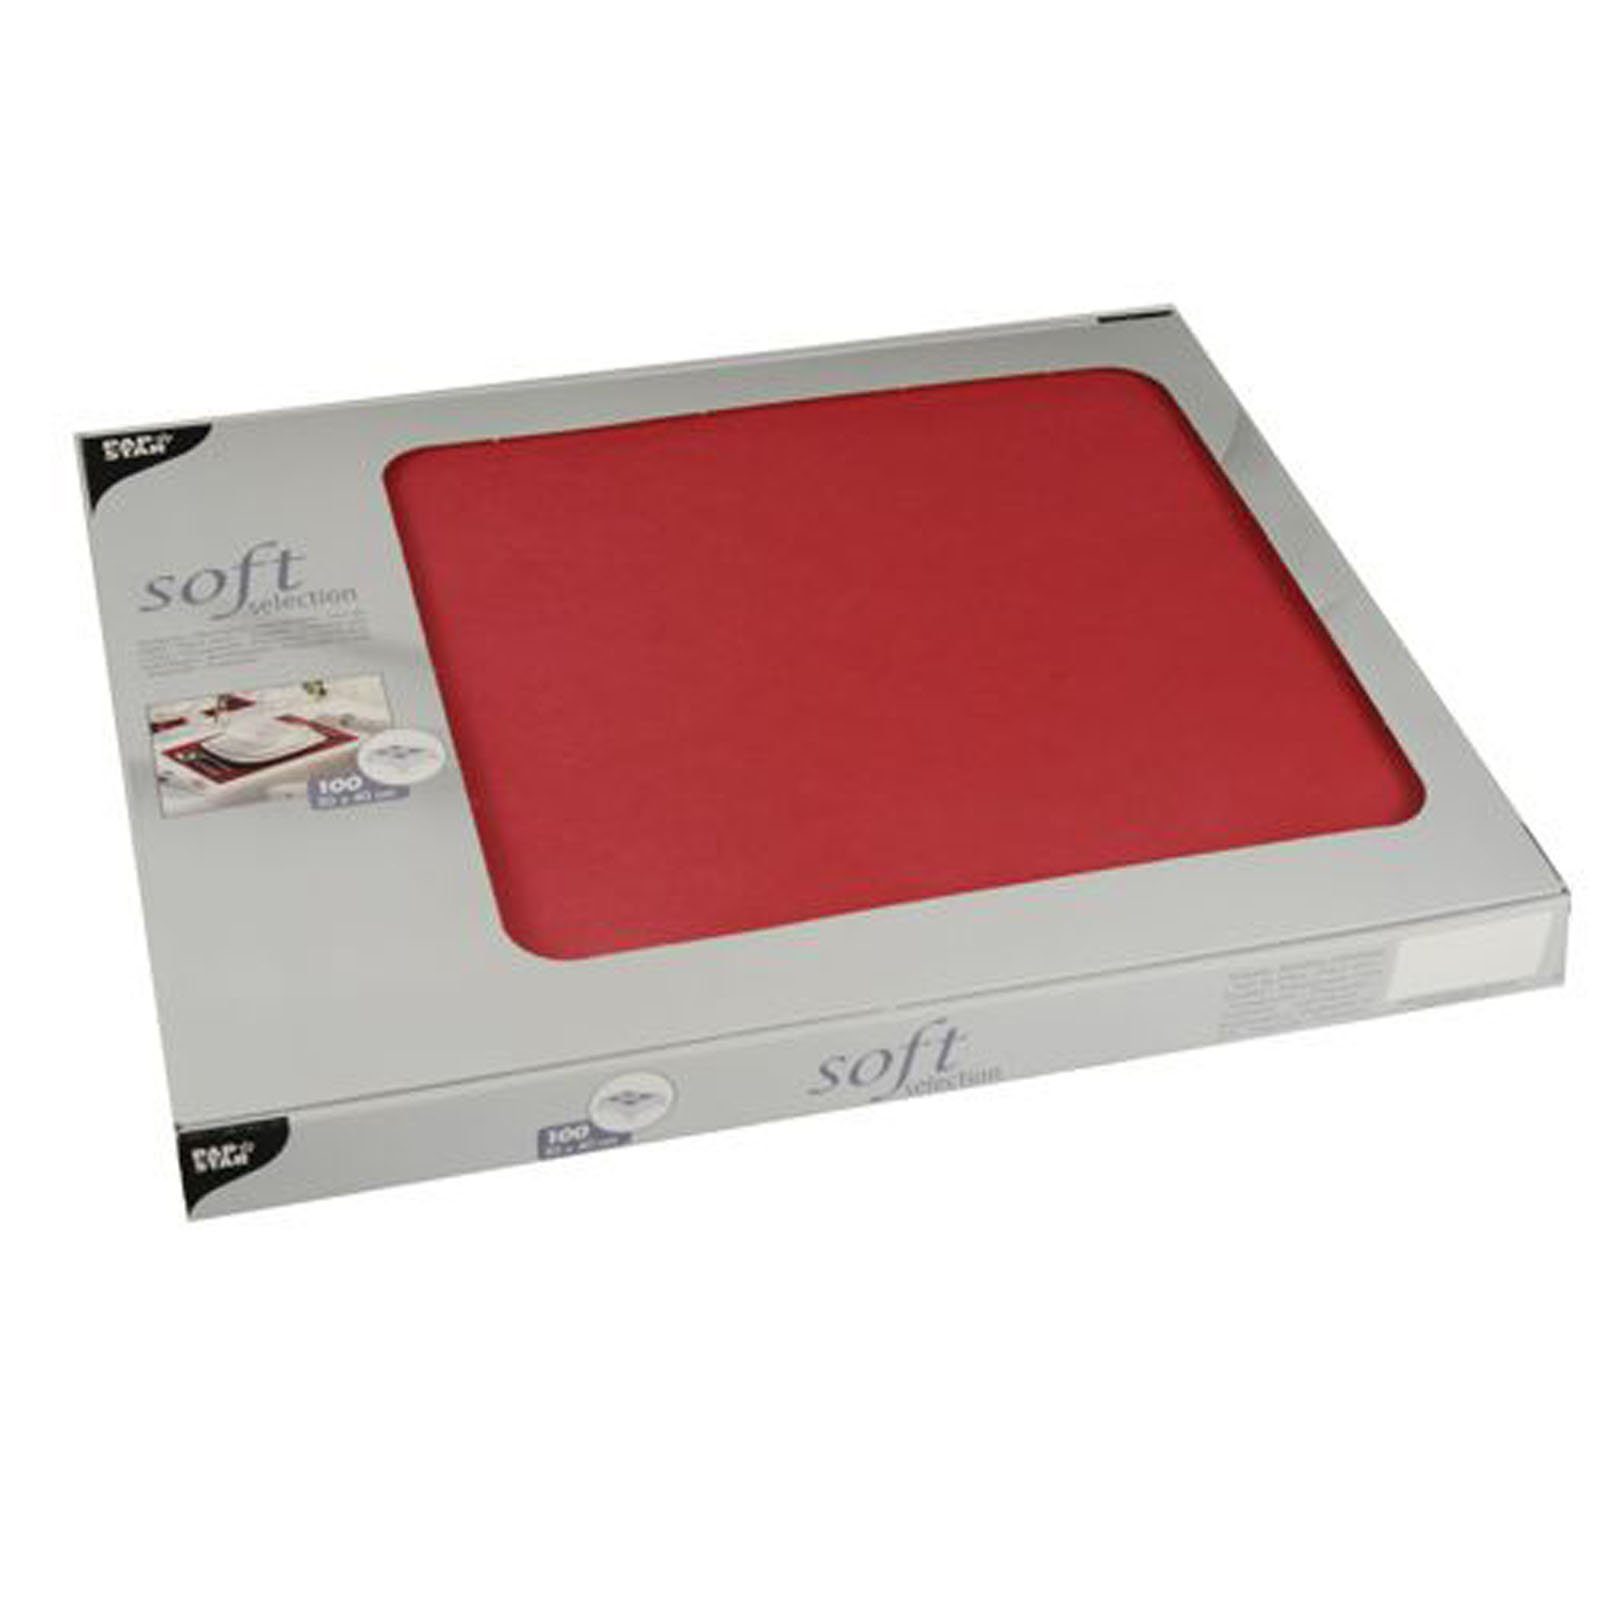 Starpak Einwegschale 600 Stück Vlies Tischsets, rot soft selection 30 x 40 cm